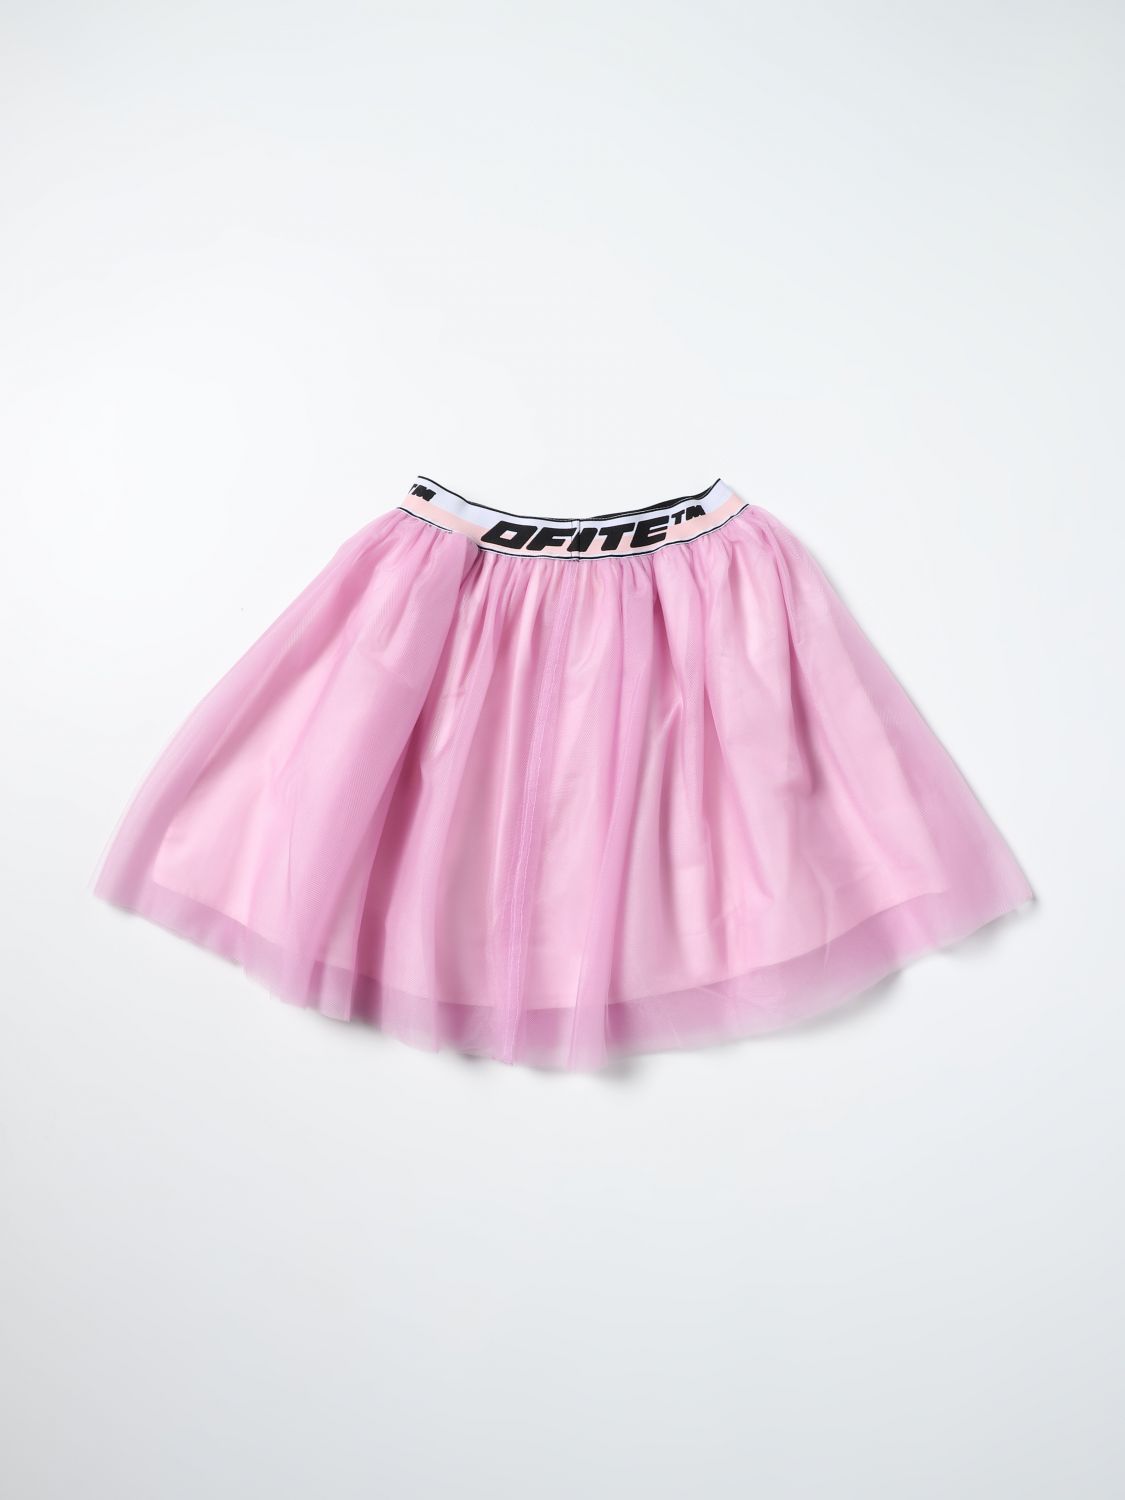 スカート オフホワイト: スカート Off-White 女の子 ピンク 2